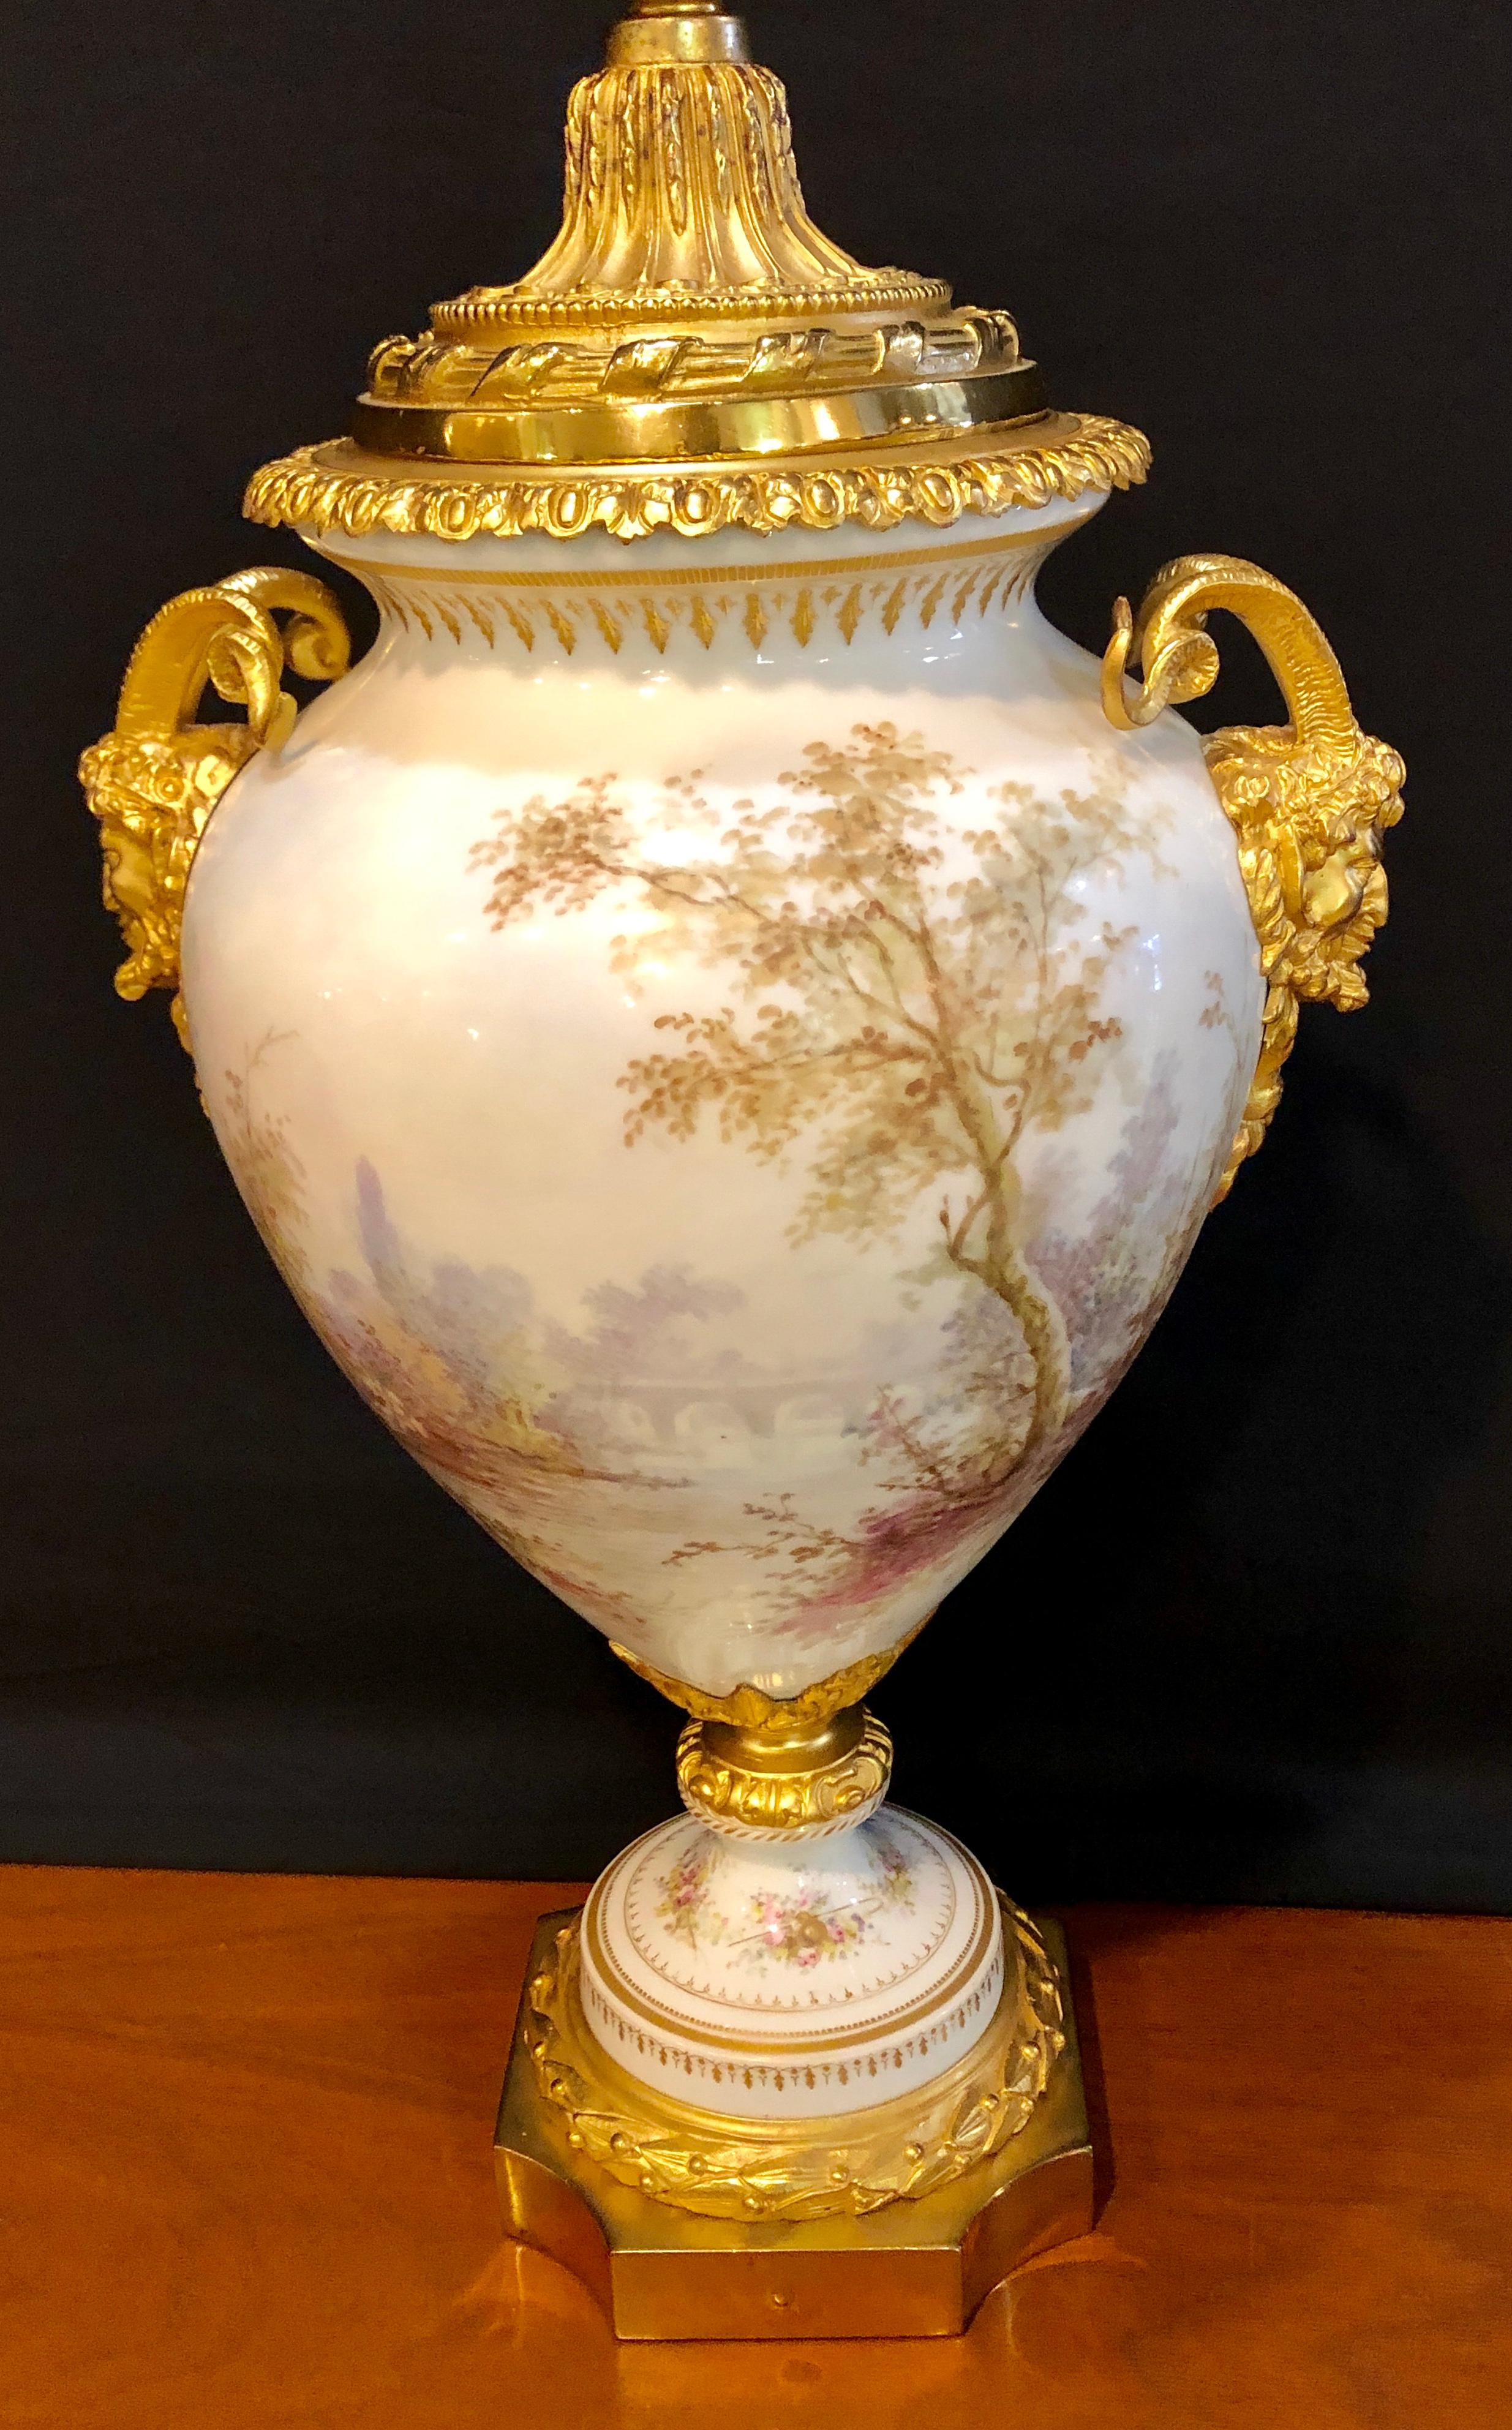 Vase à couvercle en bronze à tête de bélier peint Sèvres. Ce vase merveilleusement détaillé a été nettoyé professionnellement sur une base tournante avec de fines montures en bronze doré. Signature de l'artiste et de l'entreprise.